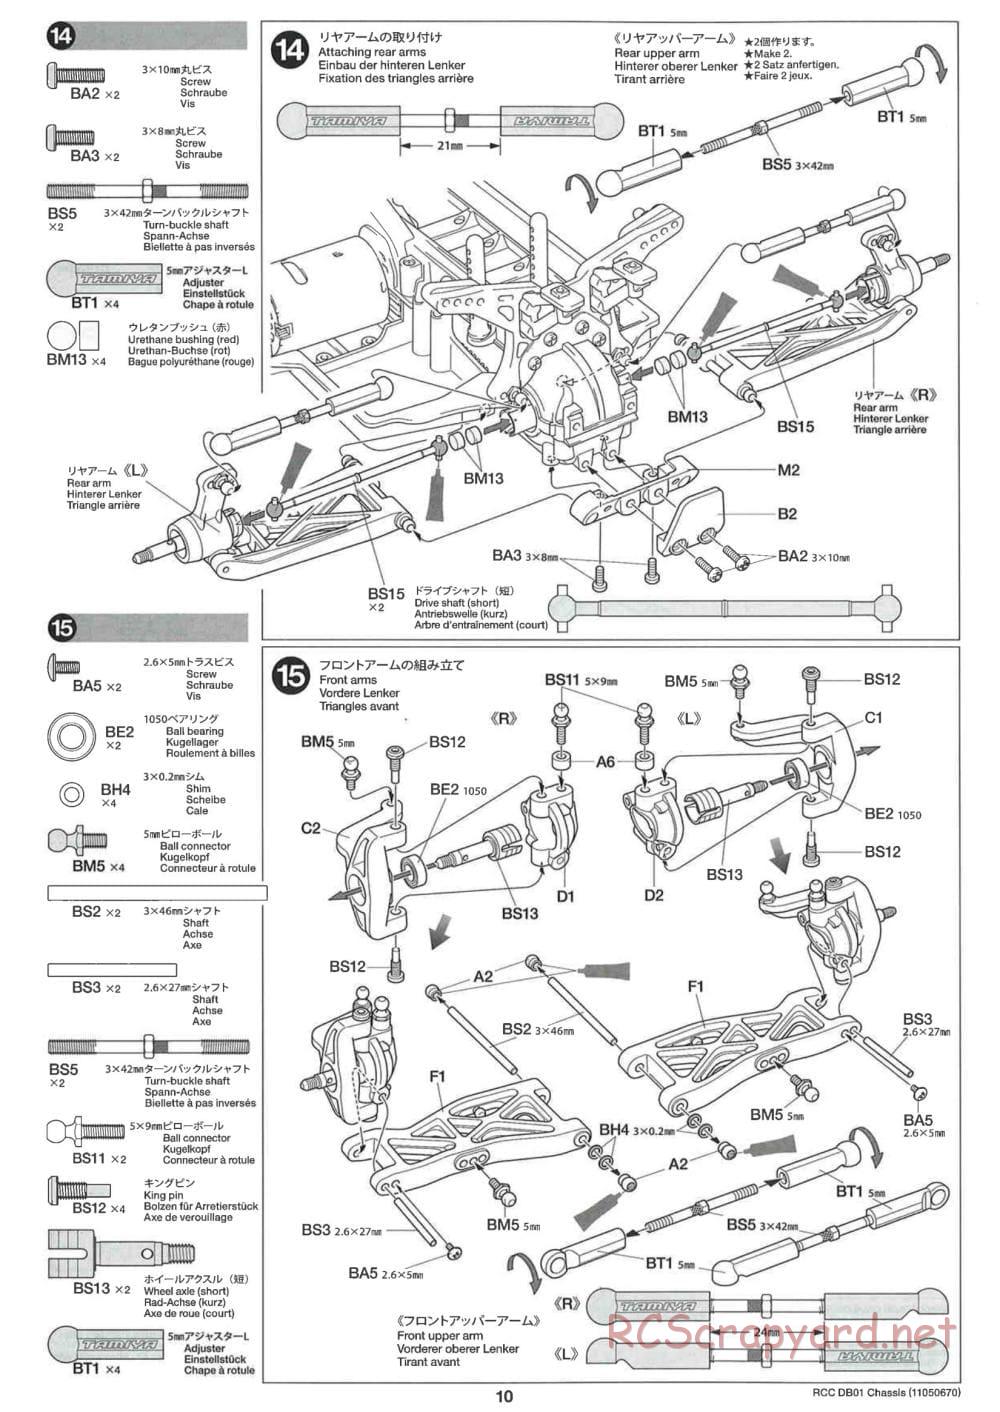 Tamiya - DB-01 Chassis - Manual - Page 10